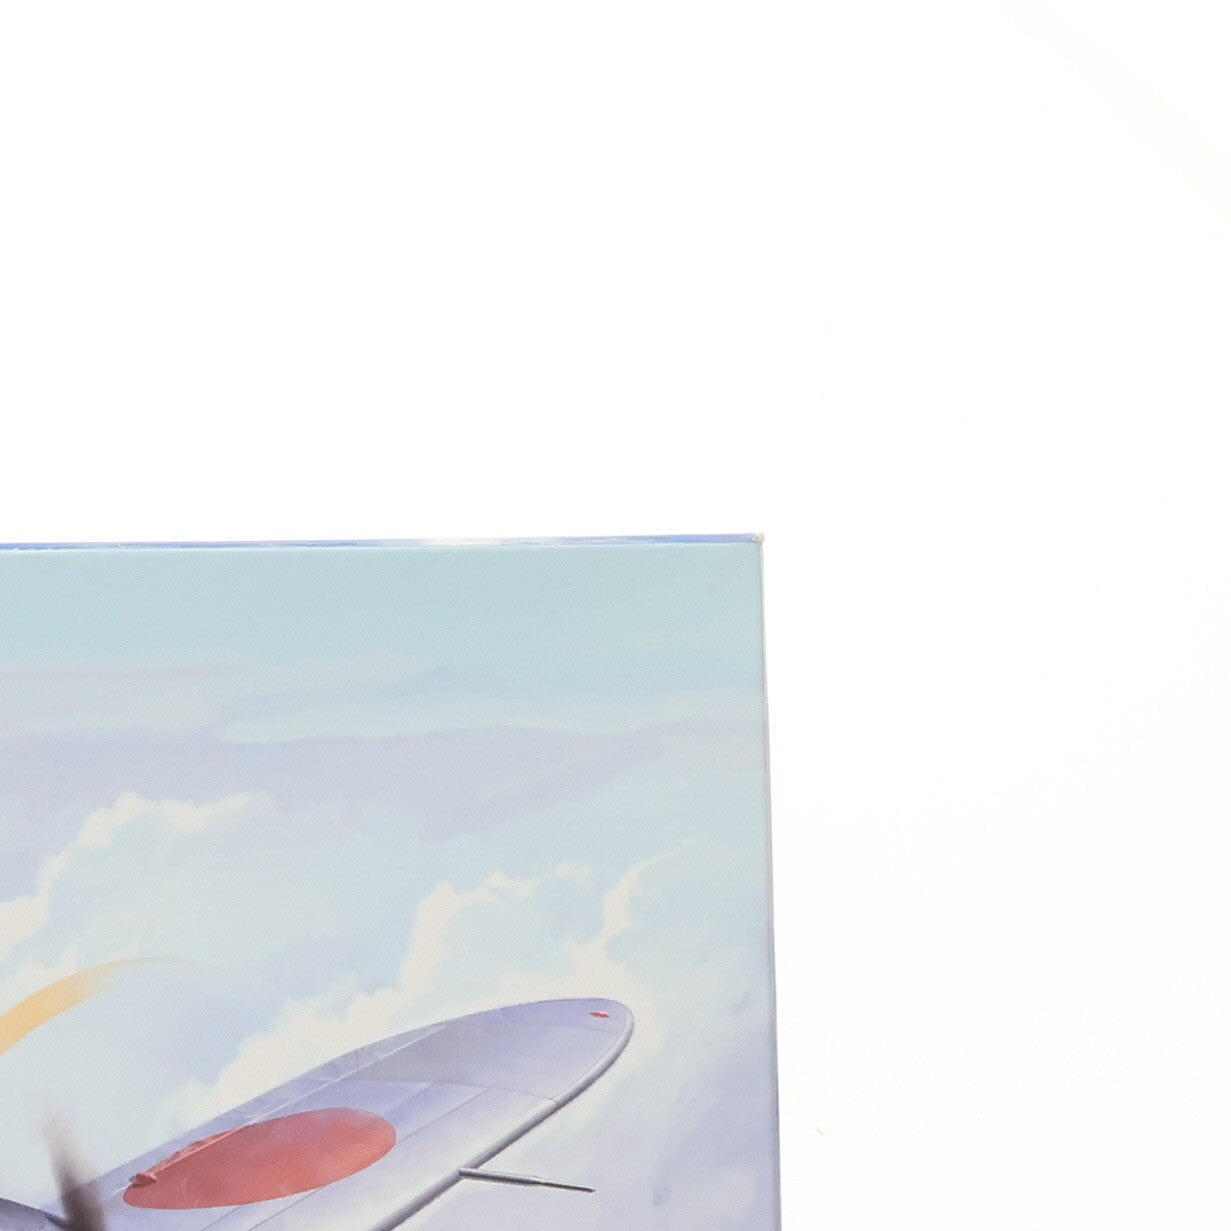 【中古即納】[PTM]1/32 中島 キ44 二式単座戦闘機 鍾馗 II型 乙 40mm砲装備機 プラモデル(08200) ハセガワ(20091214)